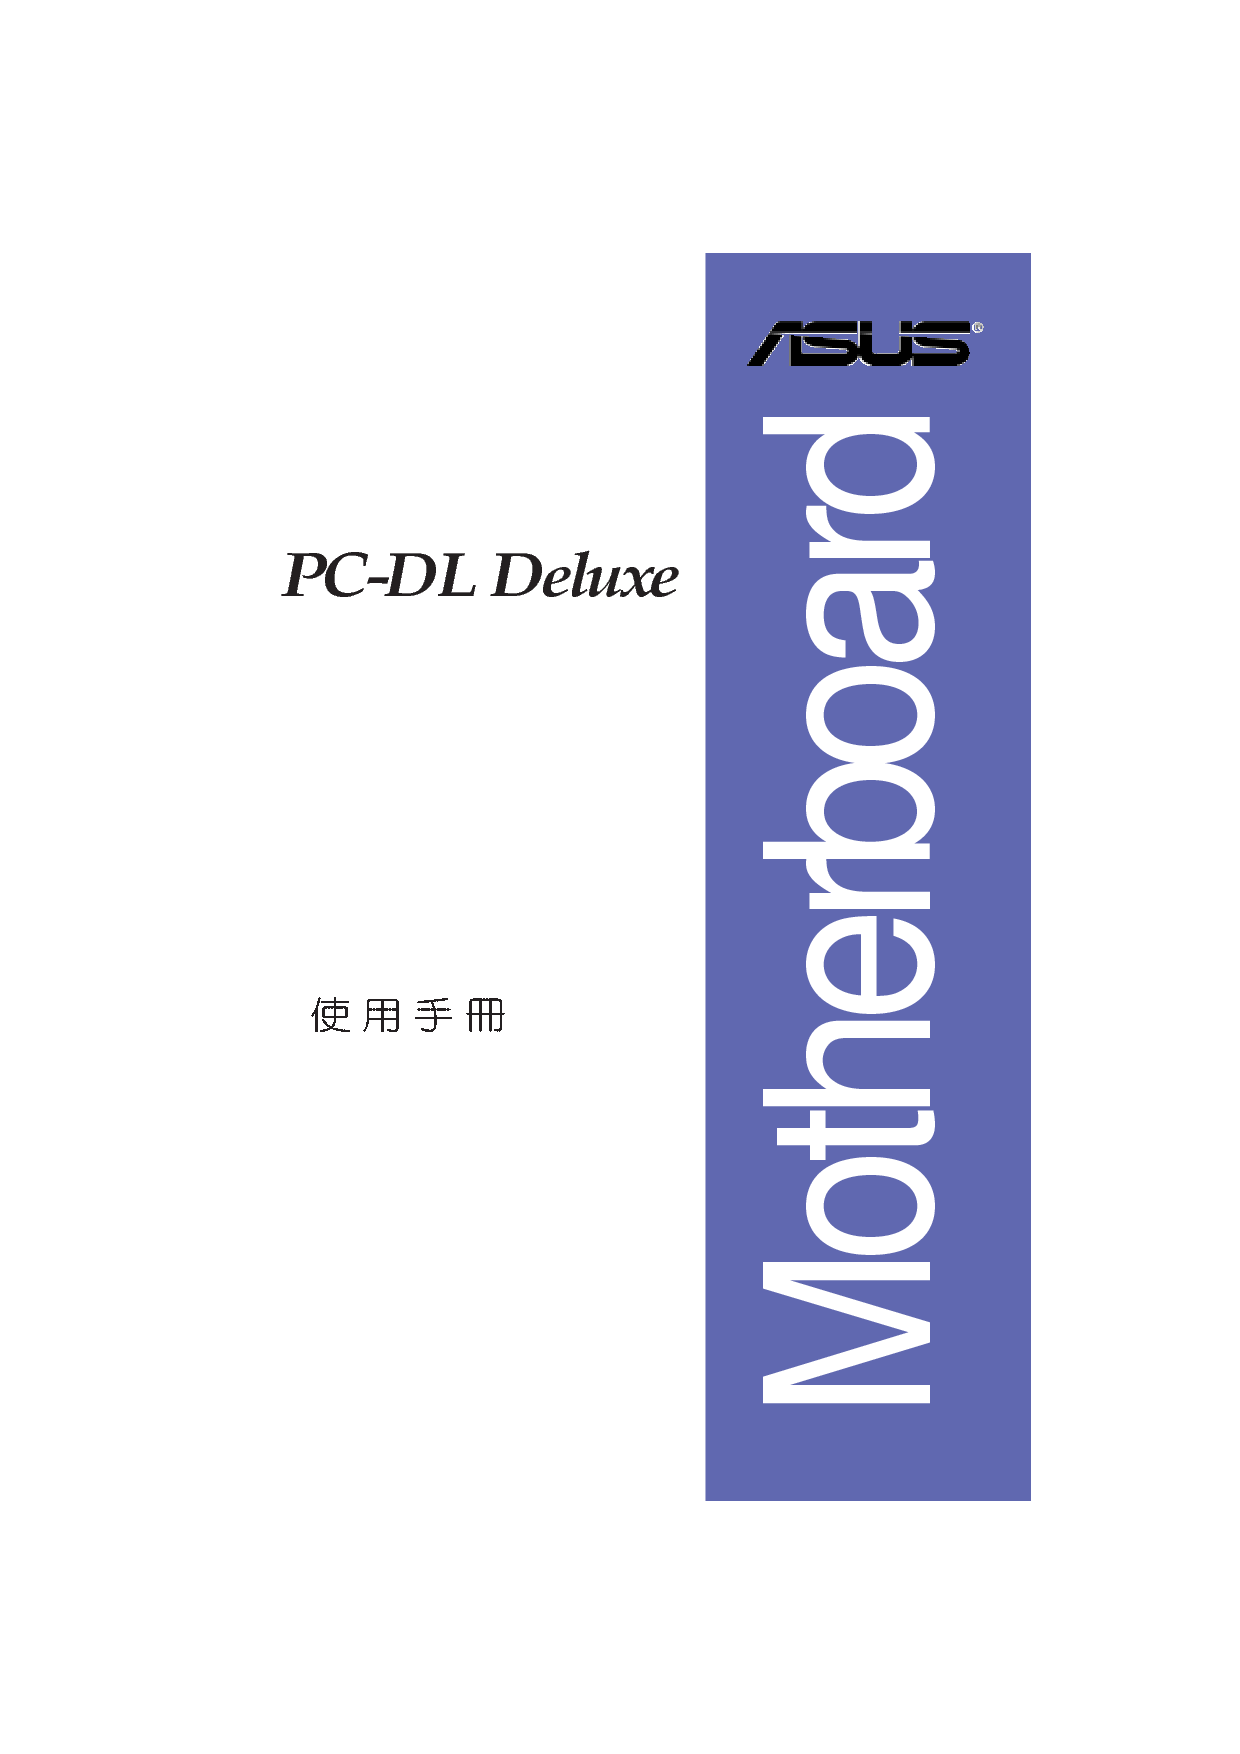 华硕 Asus PC-DL Deluxe 用户手册 封面